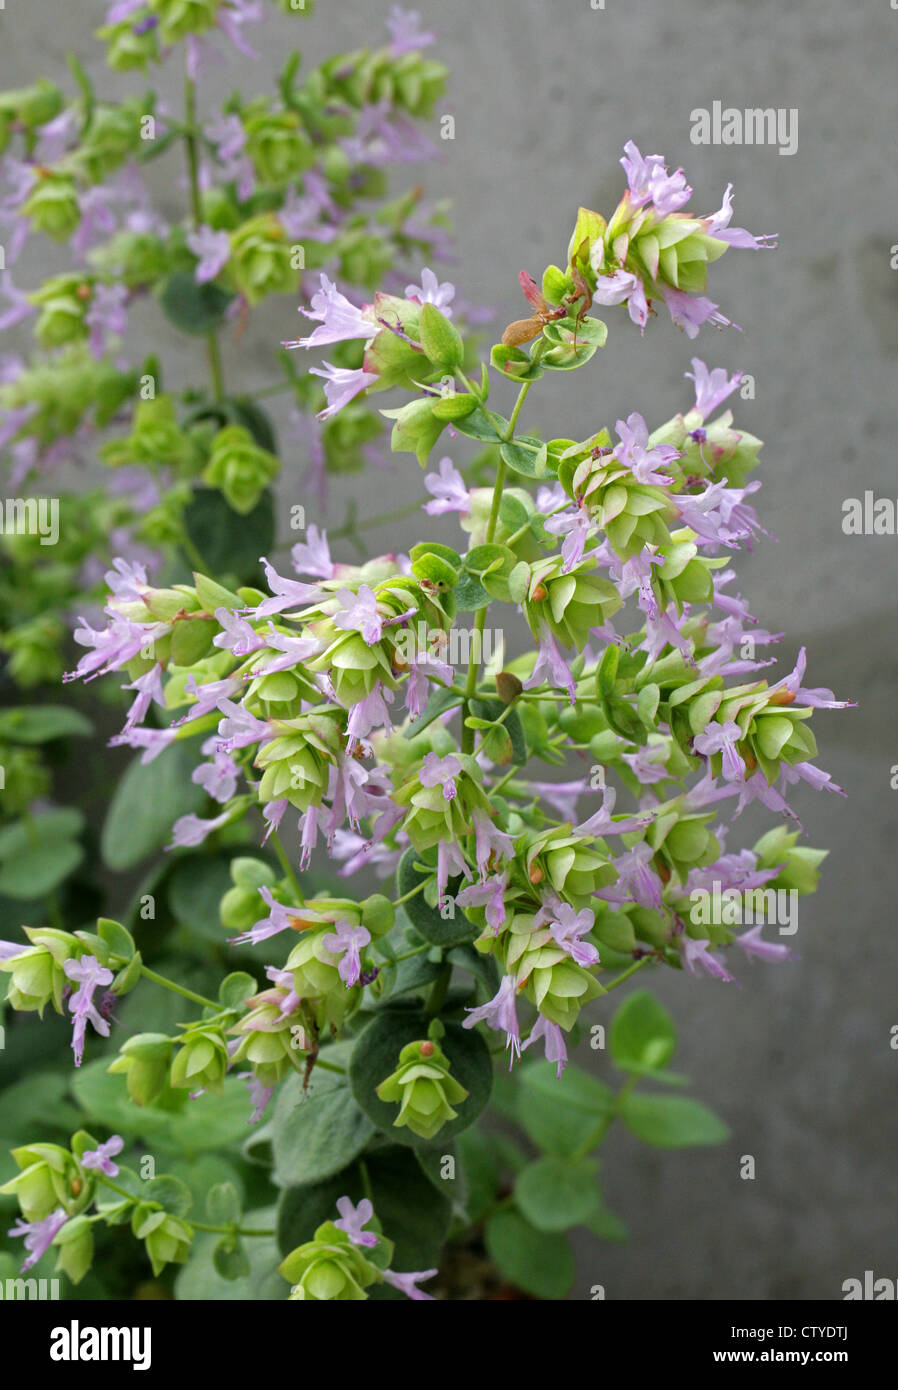 Origano, Origanum calcaratum, Lamiaceae. Greece, Europe. Stock Photo